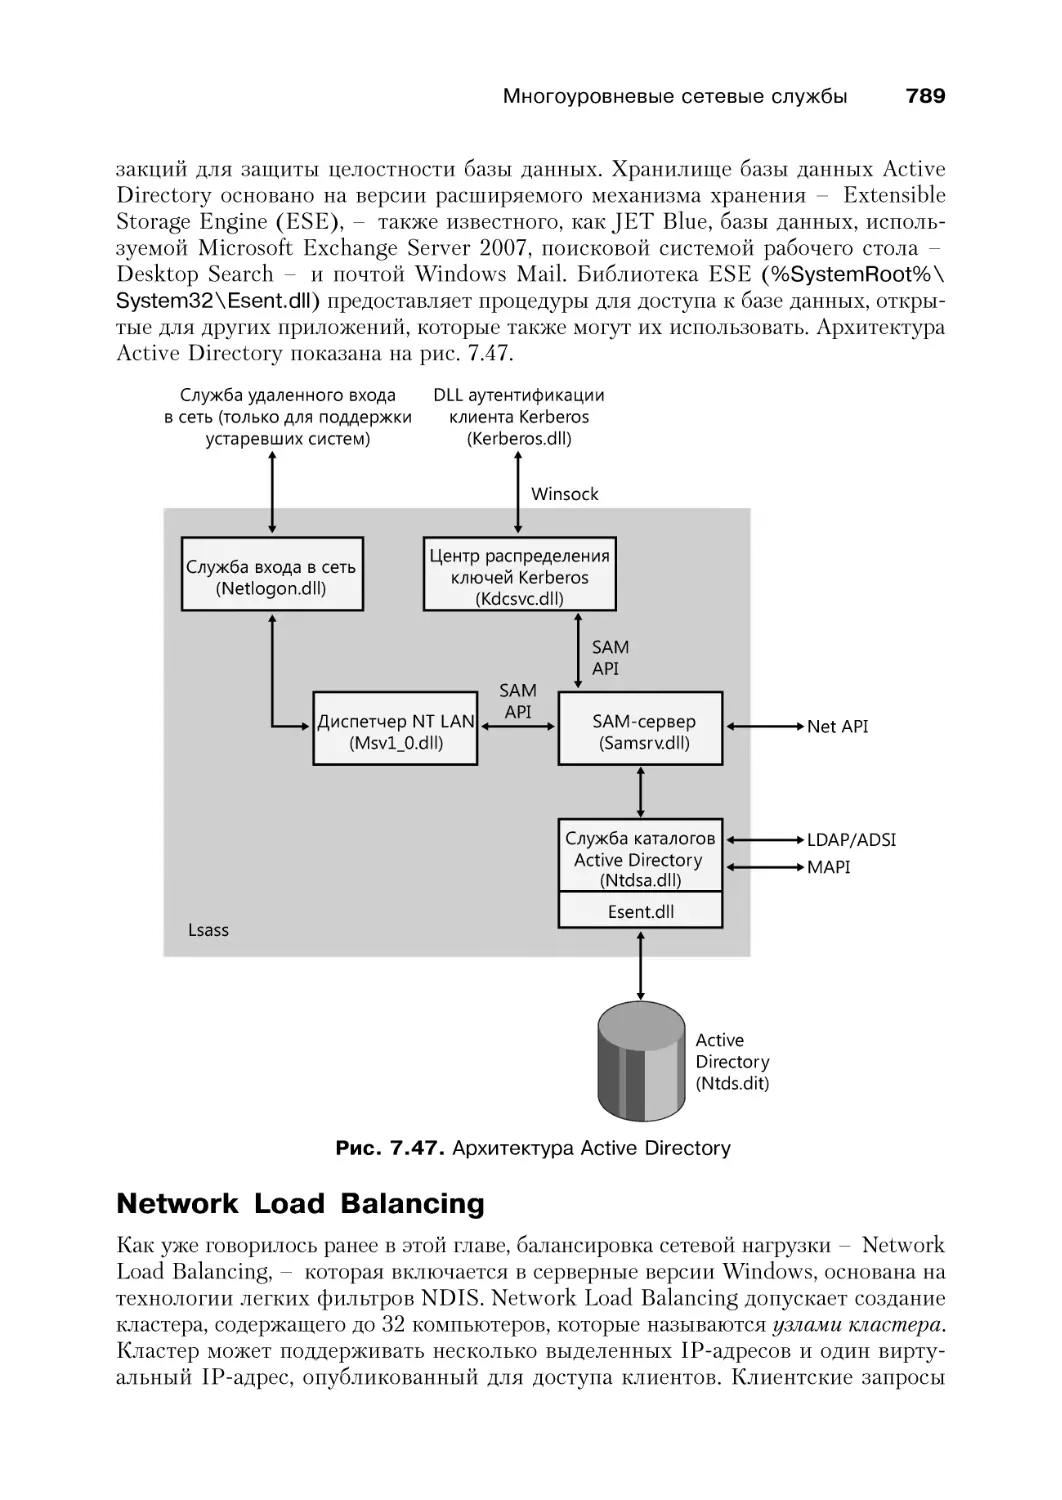 Network Load Balancing